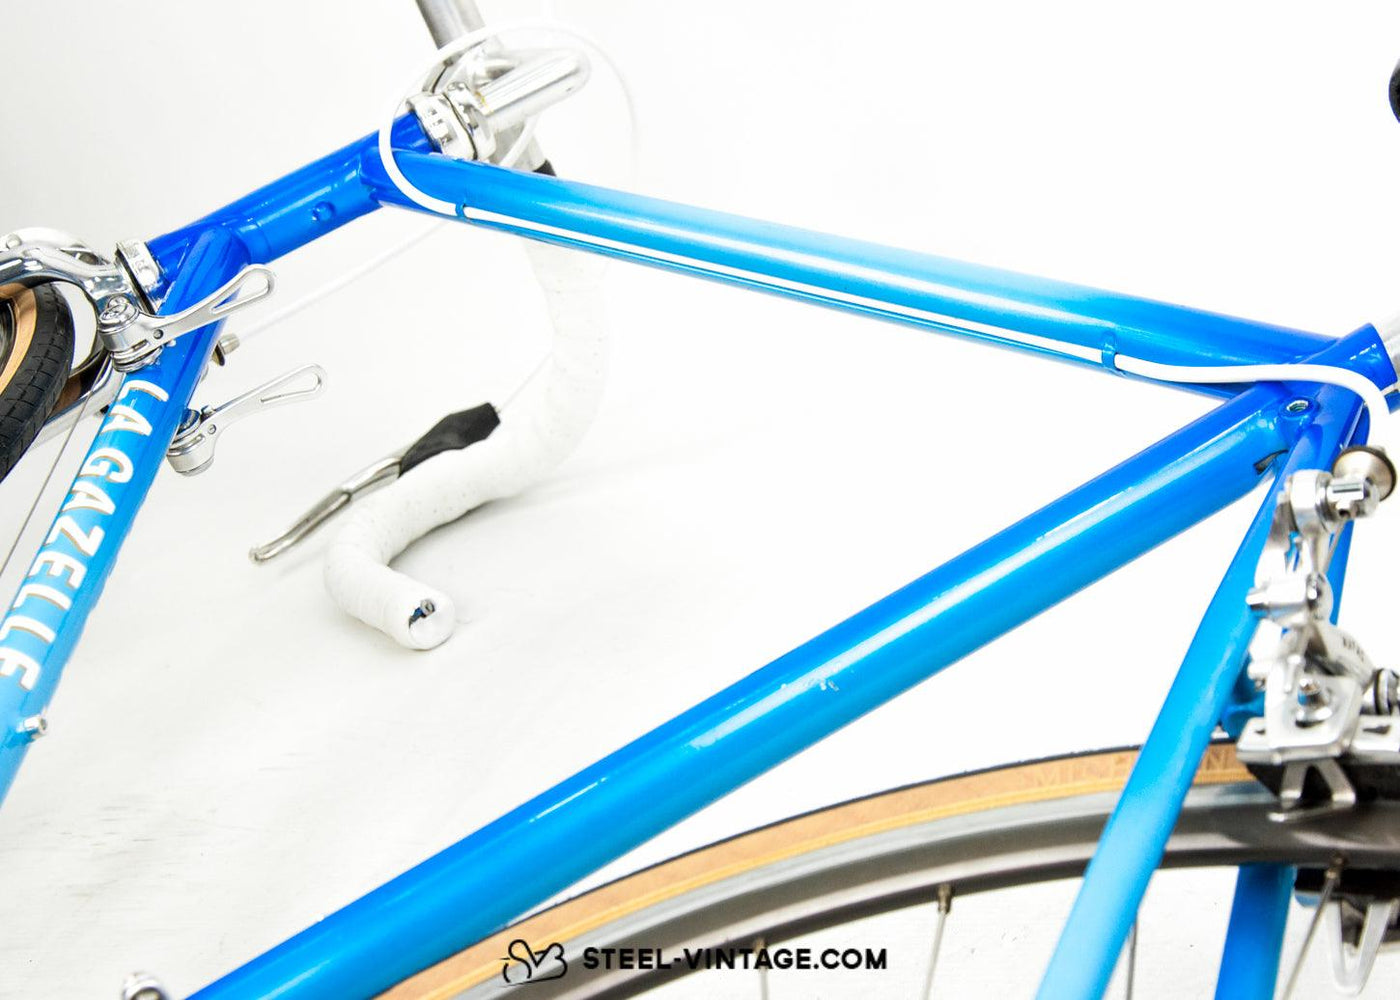 La Gazelle 1986 Classic Road Bike - Steel Vintage Bikes